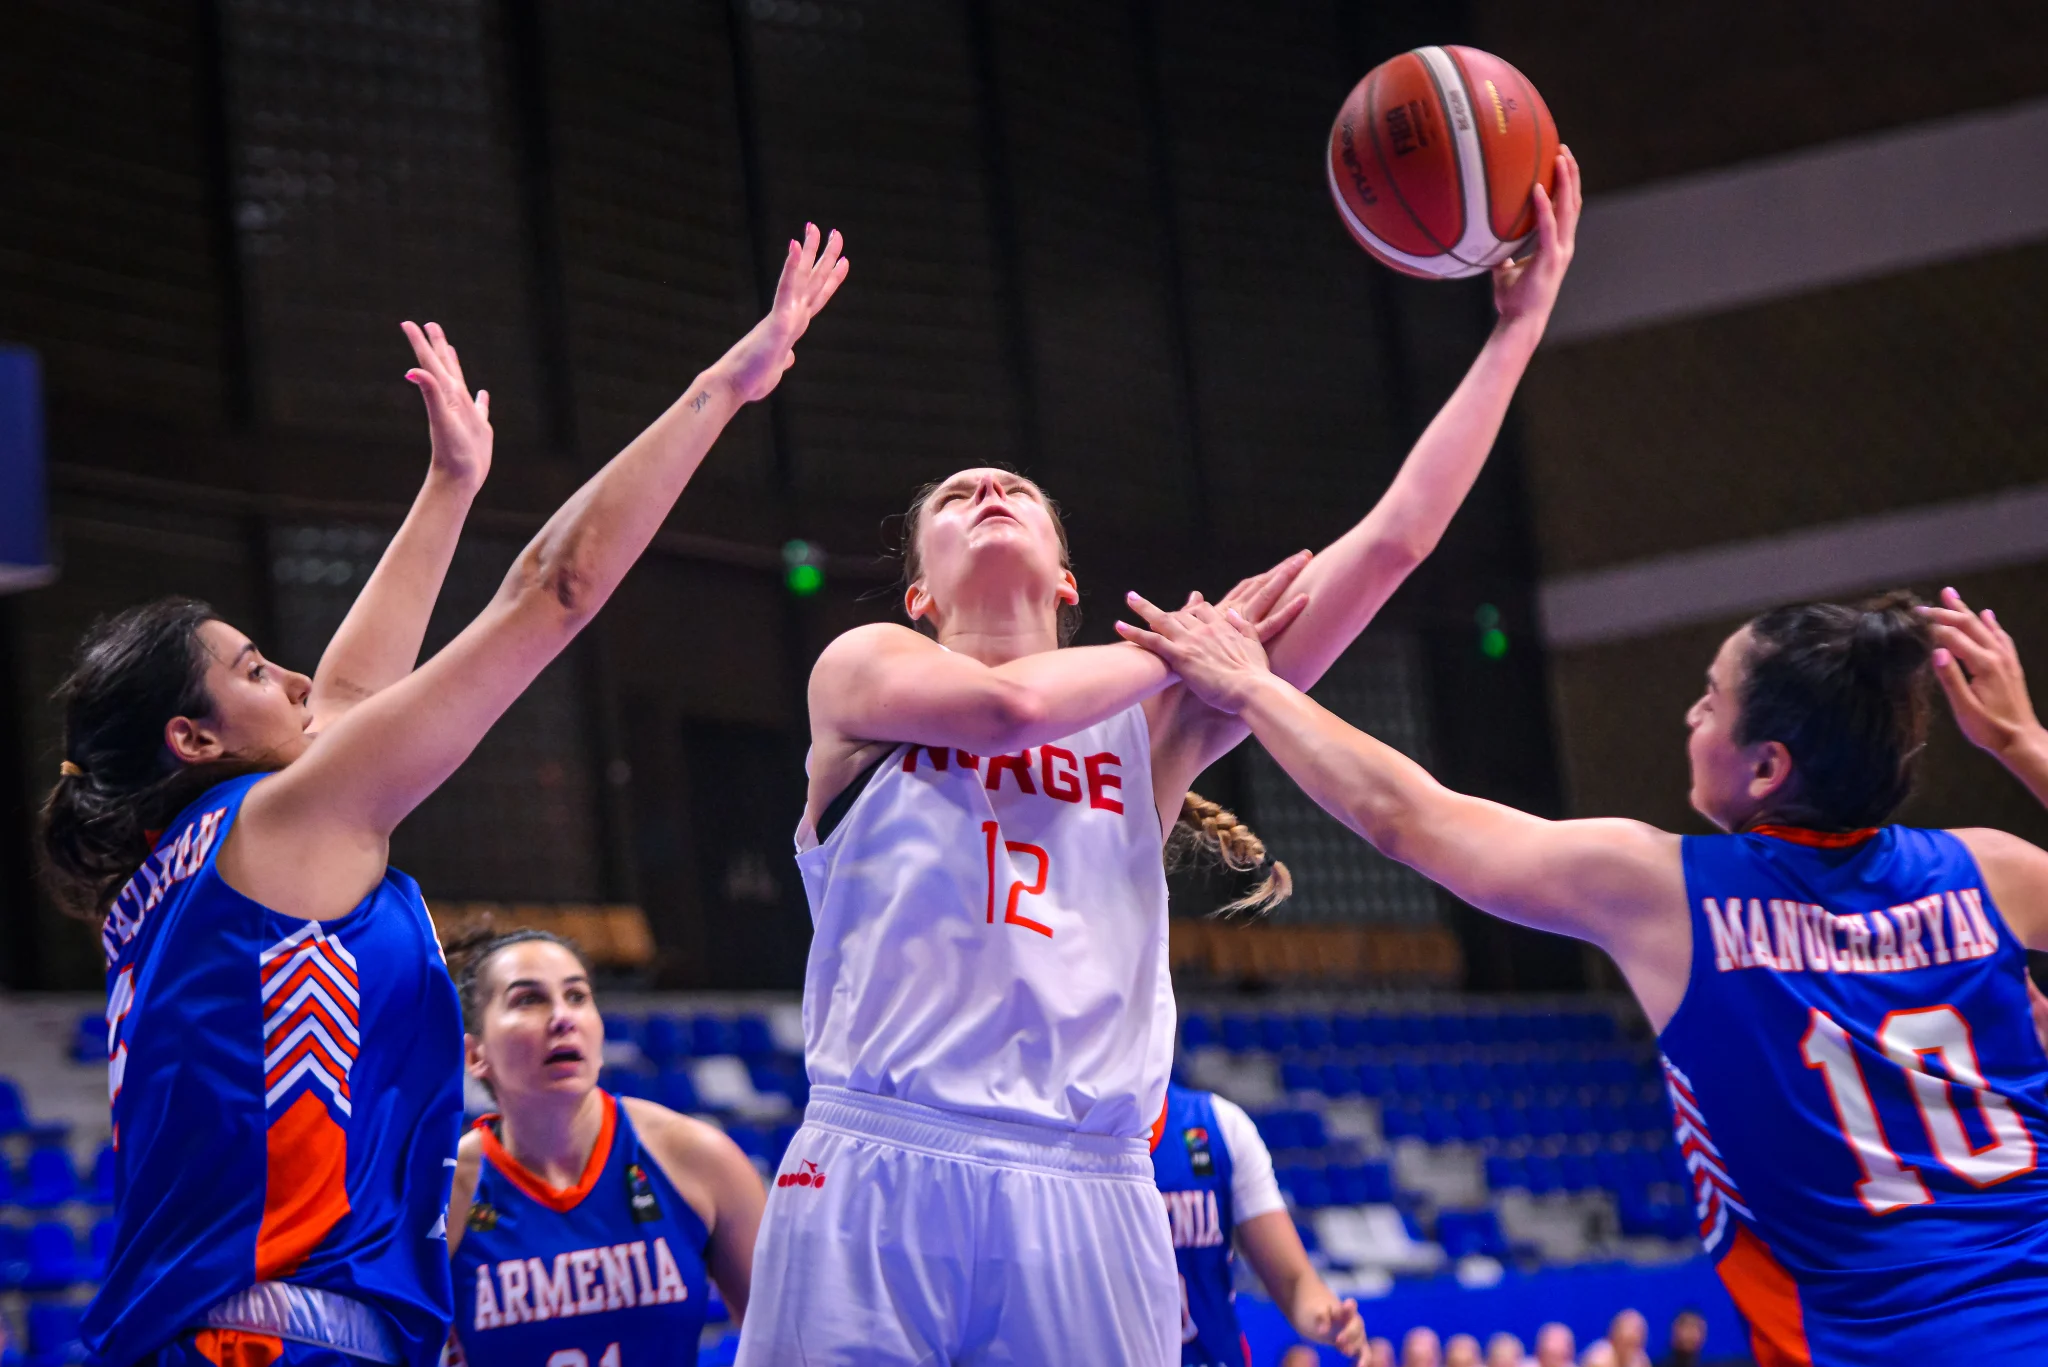 Tori Solberg Halvorsen var mestscorende for Norge med 16 poeng og satte 6 på rad da lagets opphenting begynte i fjerde periode. Her kommer tre armenske spillere til kort mot den norske lagkapteinen.
FOTO: FIBA.COM 